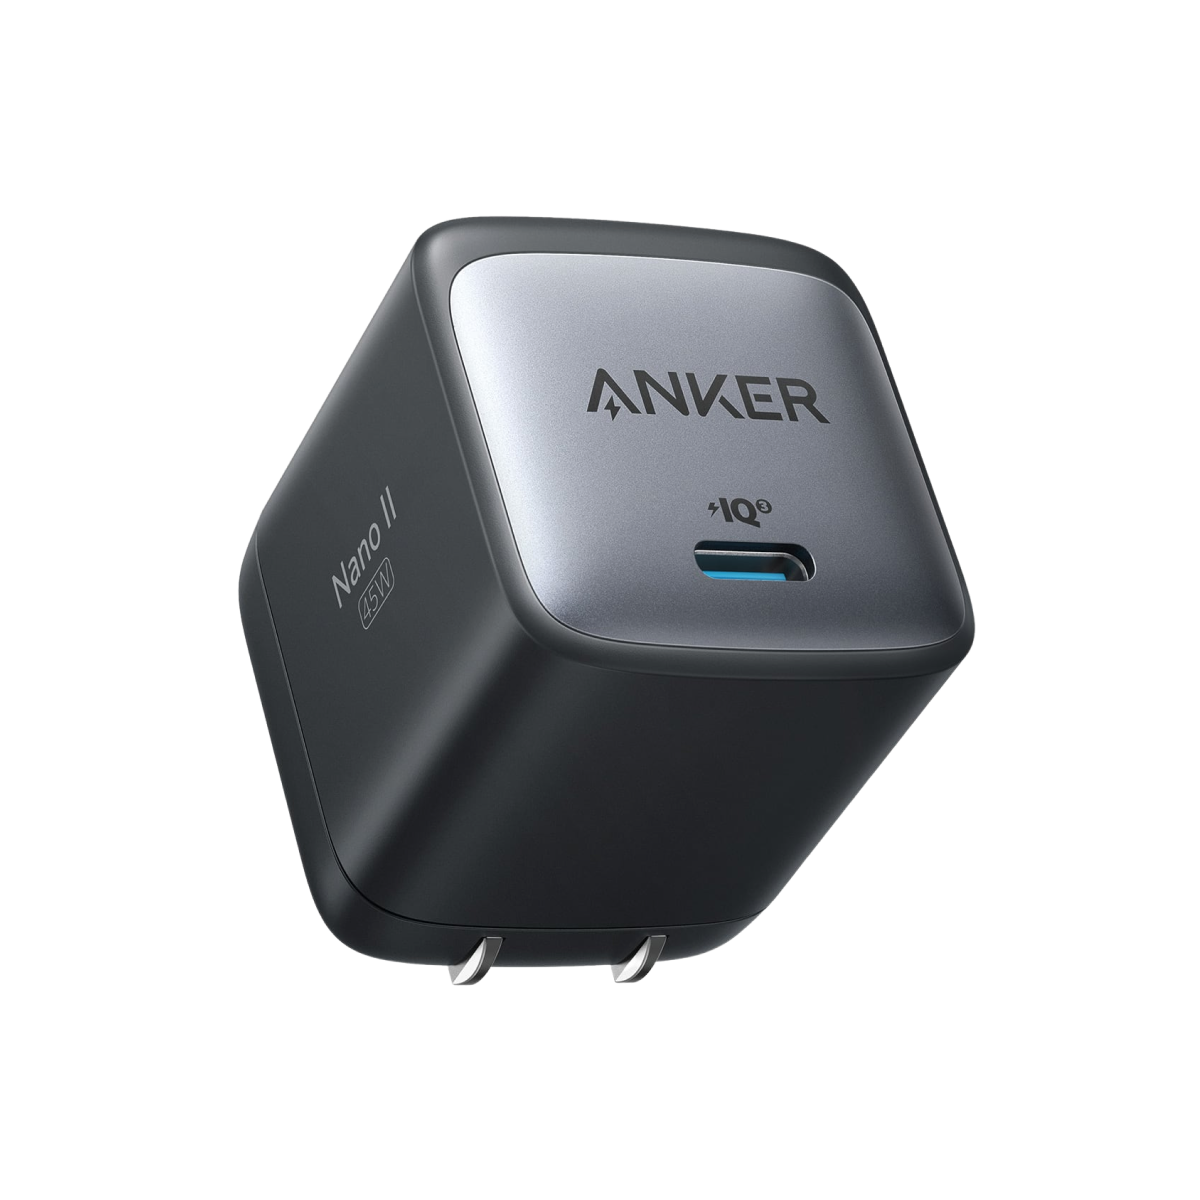 Anker <b>713</b> Charger (Nano II 45W)